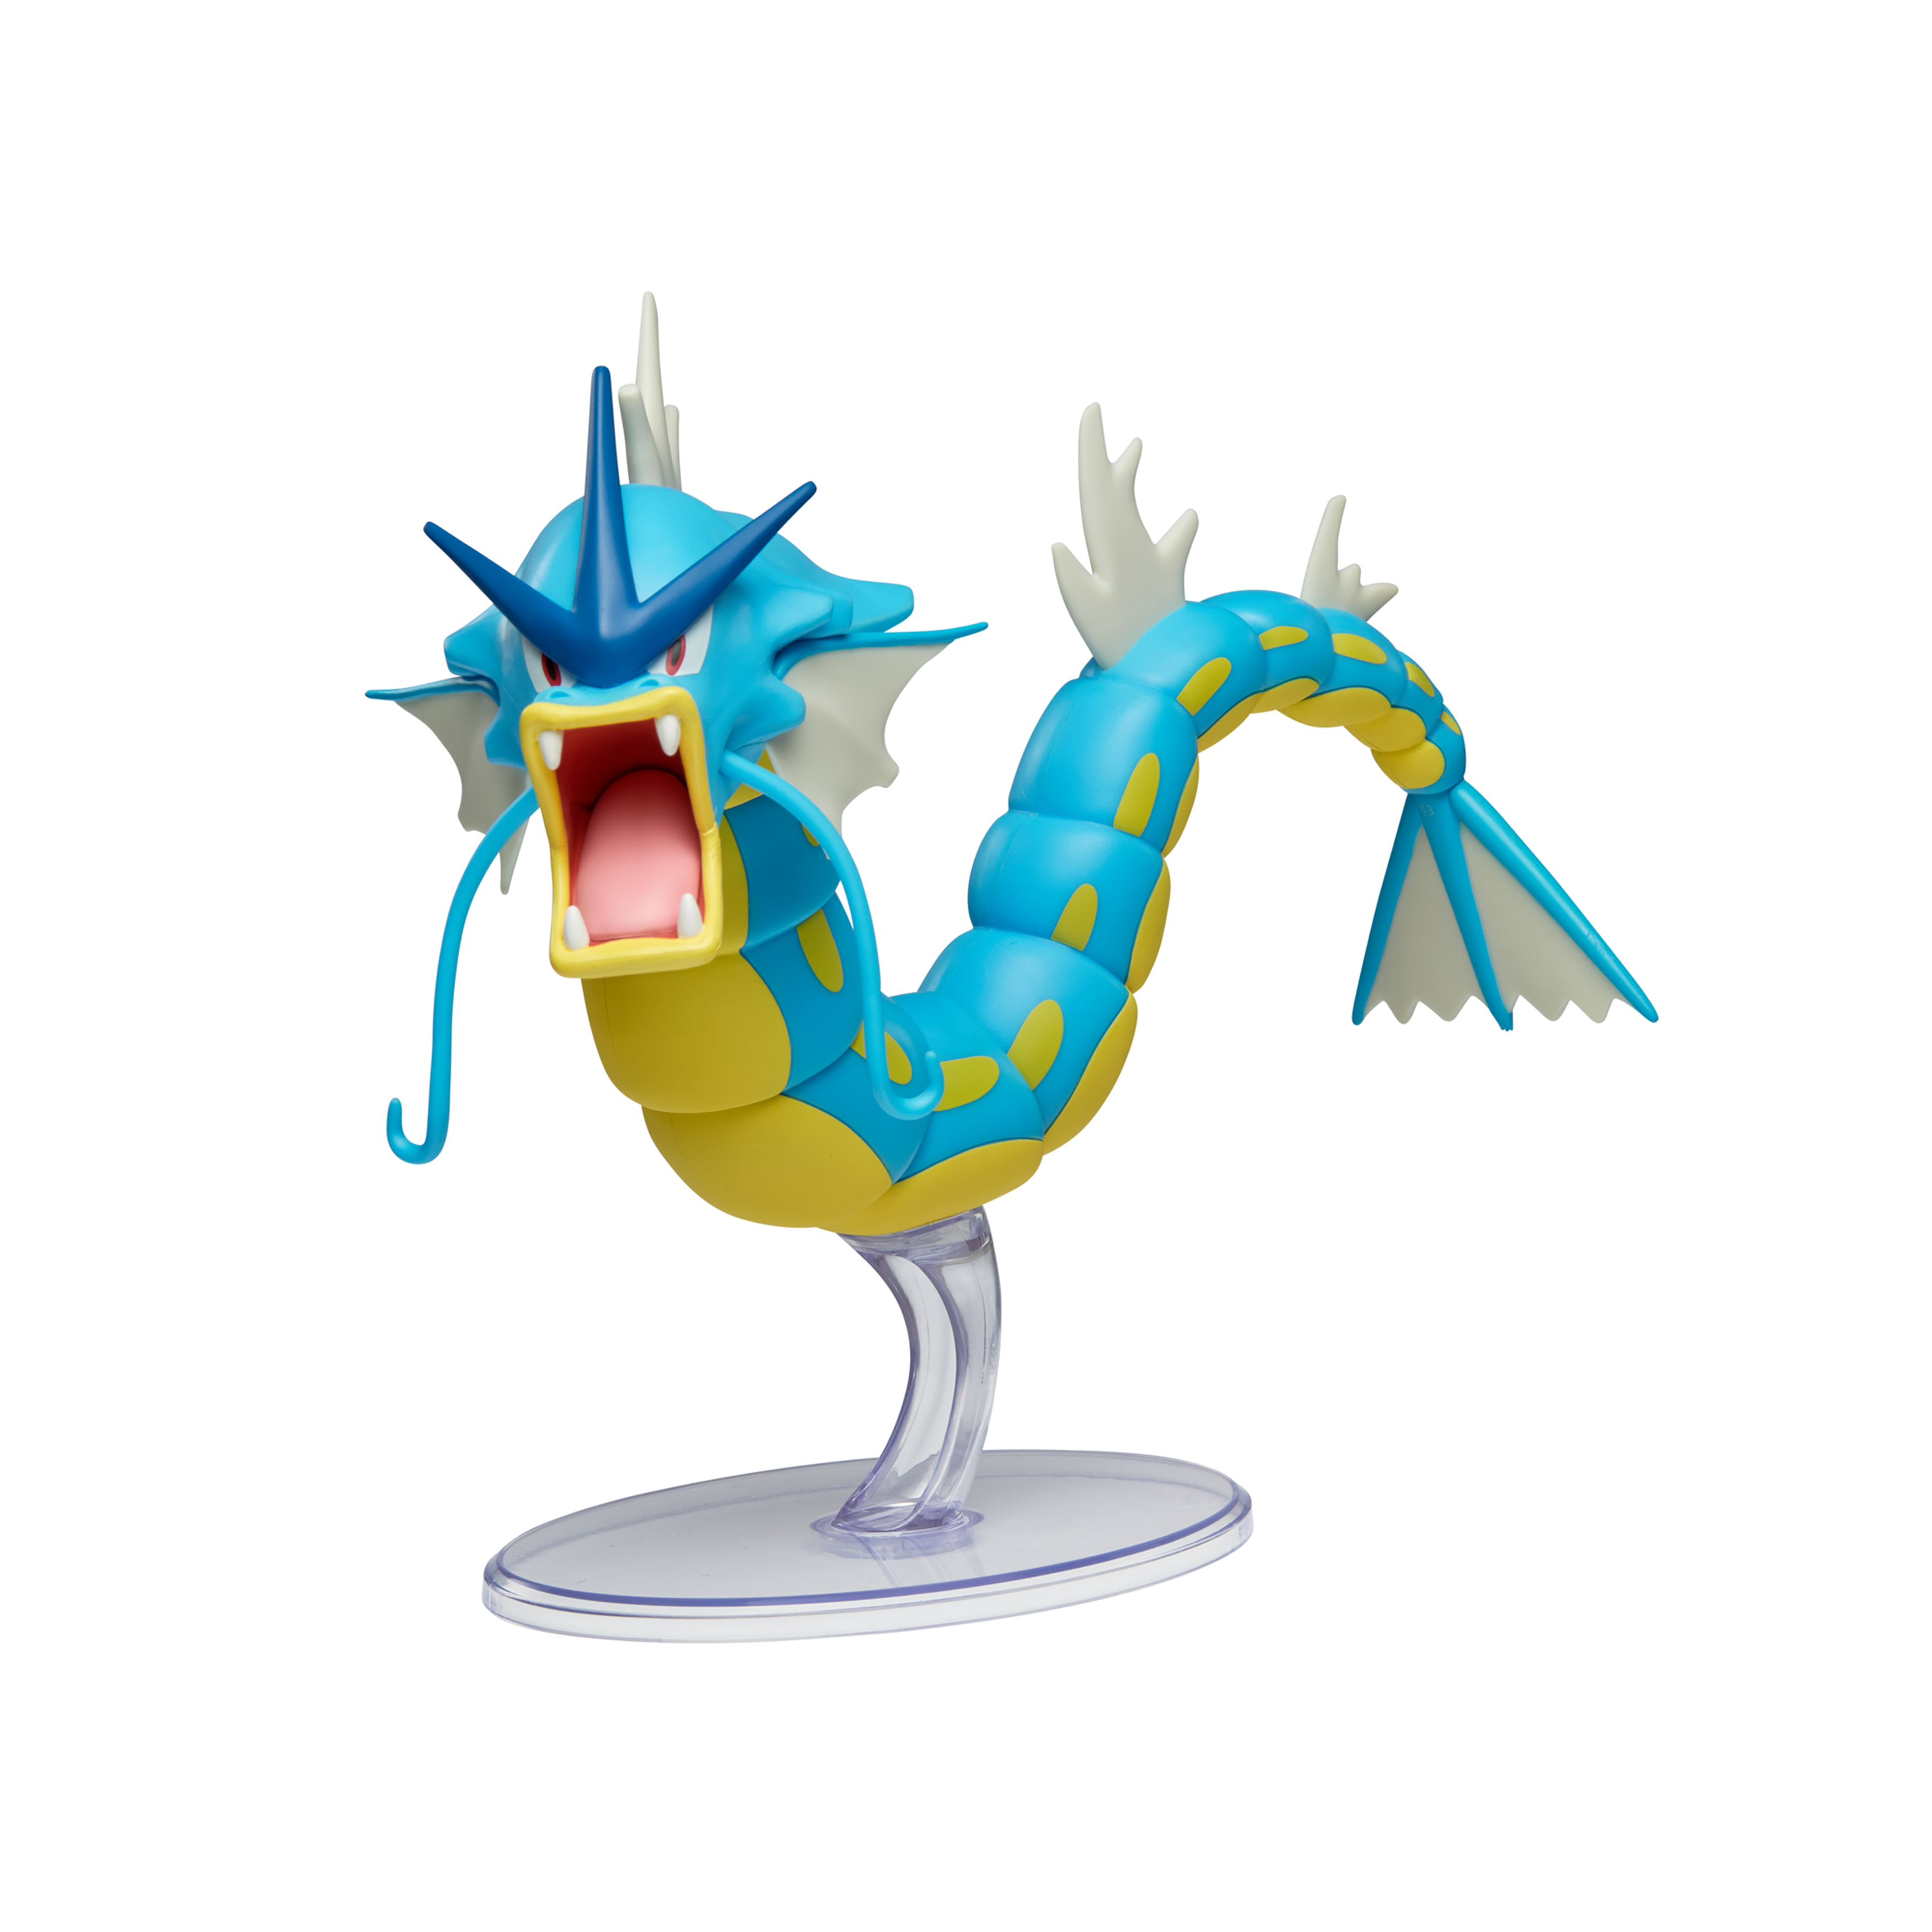 Pokémon - Epische Figur cm 30 Garados